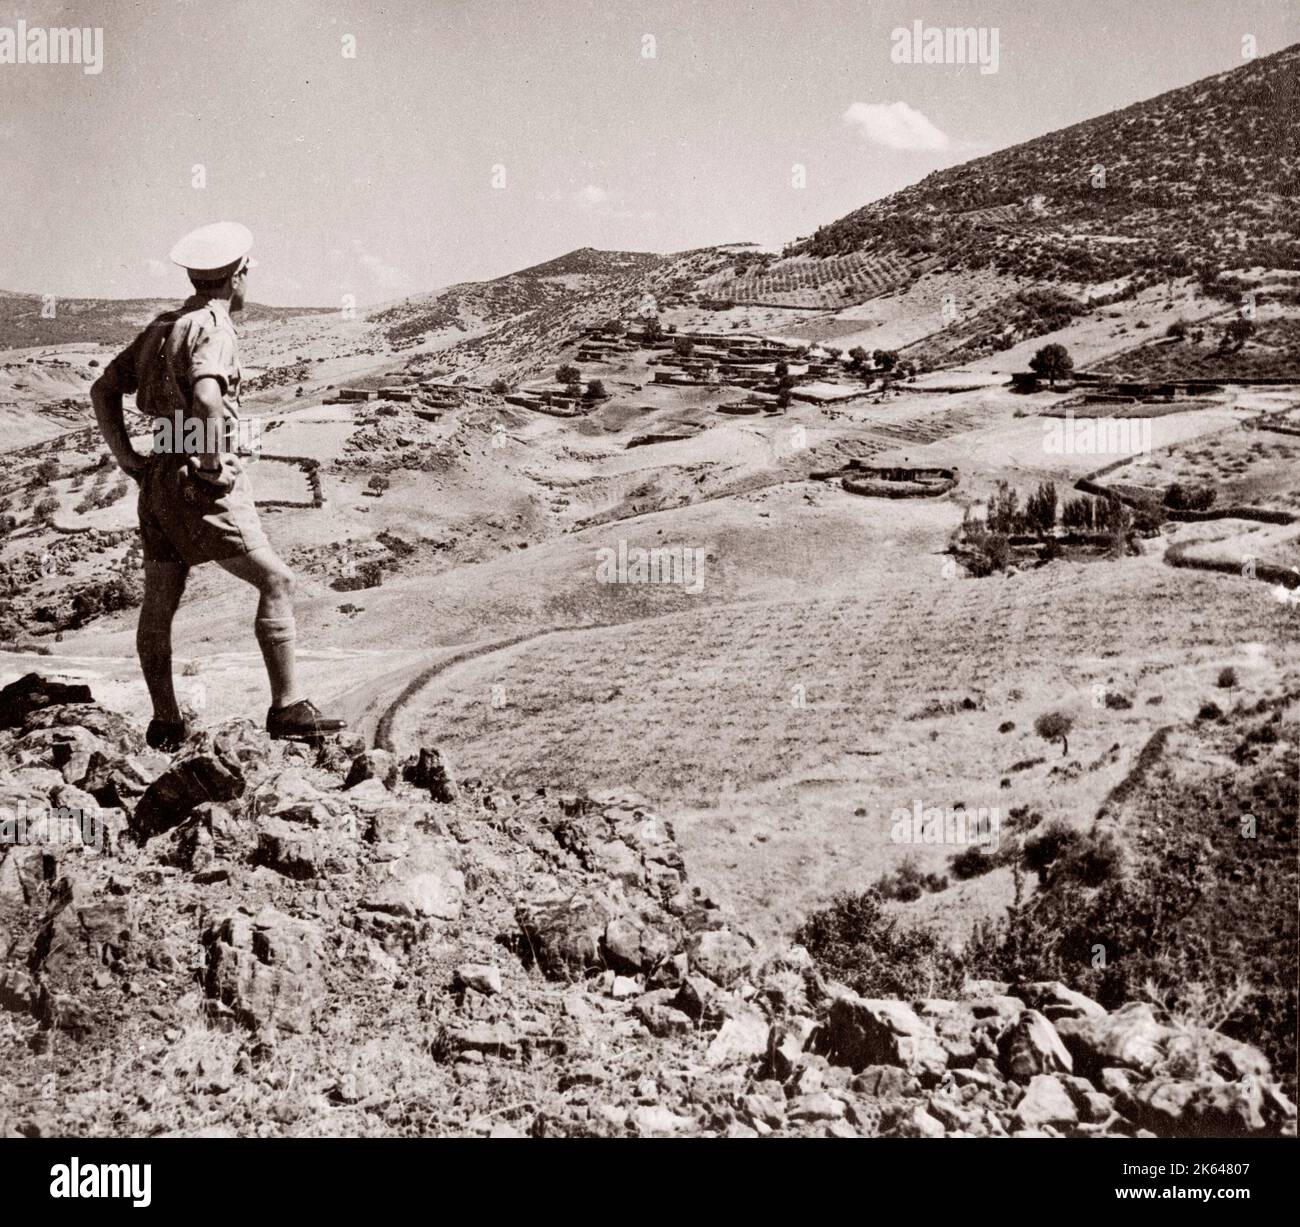 1943 Syrie - vue de Benndirek, région du Kurd le long de la frontière turque Photographie d'un officier de recrutement de l'armée britannique stationnés en Afrique de l'est et au Moyen-Orient pendant la Seconde Guerre mondiale Banque D'Images